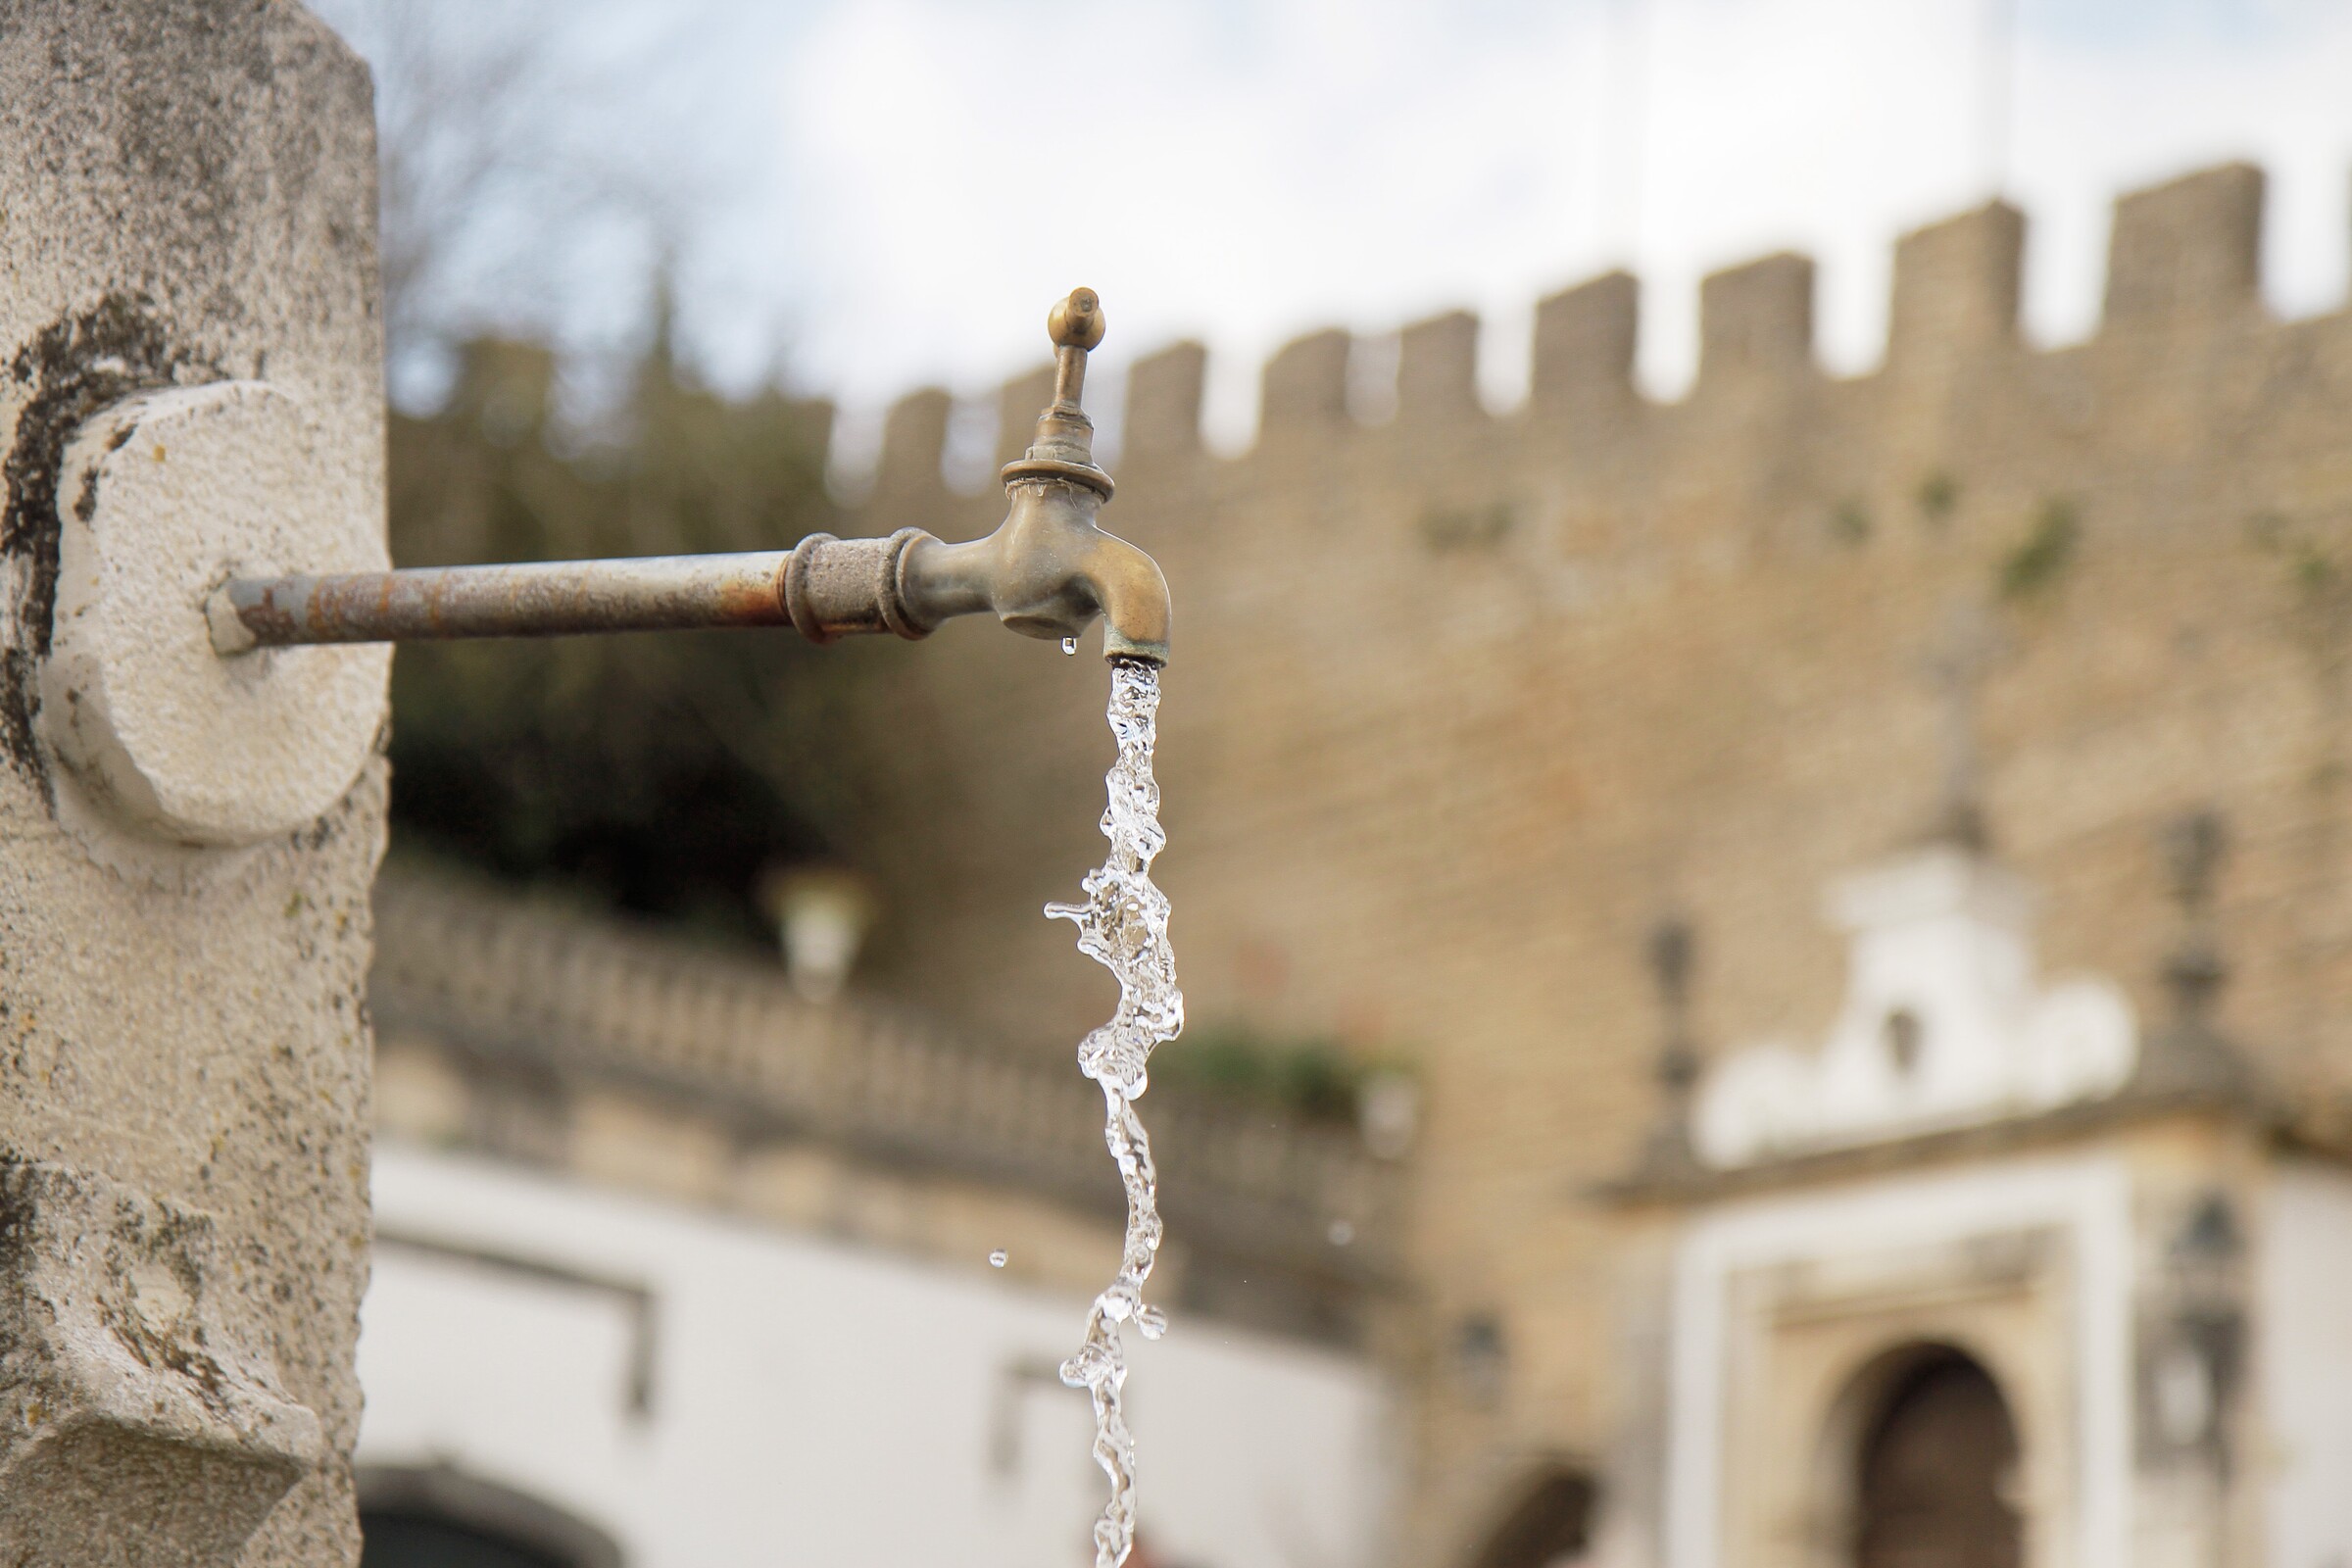 Município de Óbidos faz limpeza e higienização dos reservatórios de água